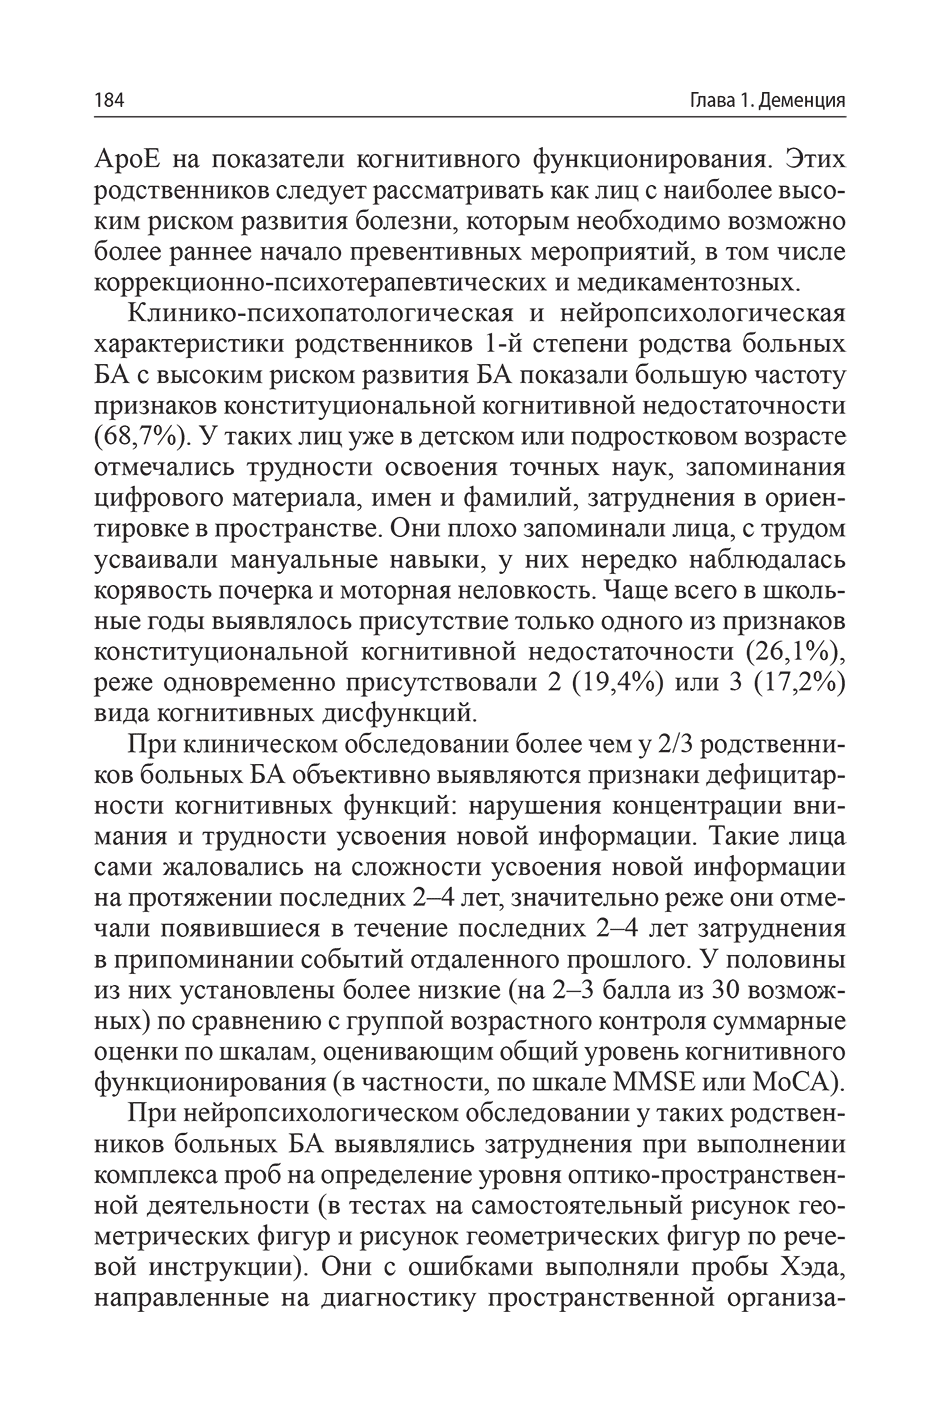 Пример страницы из книги "Руководство по гериатрической психиатрии" - Гаврилова С. И.